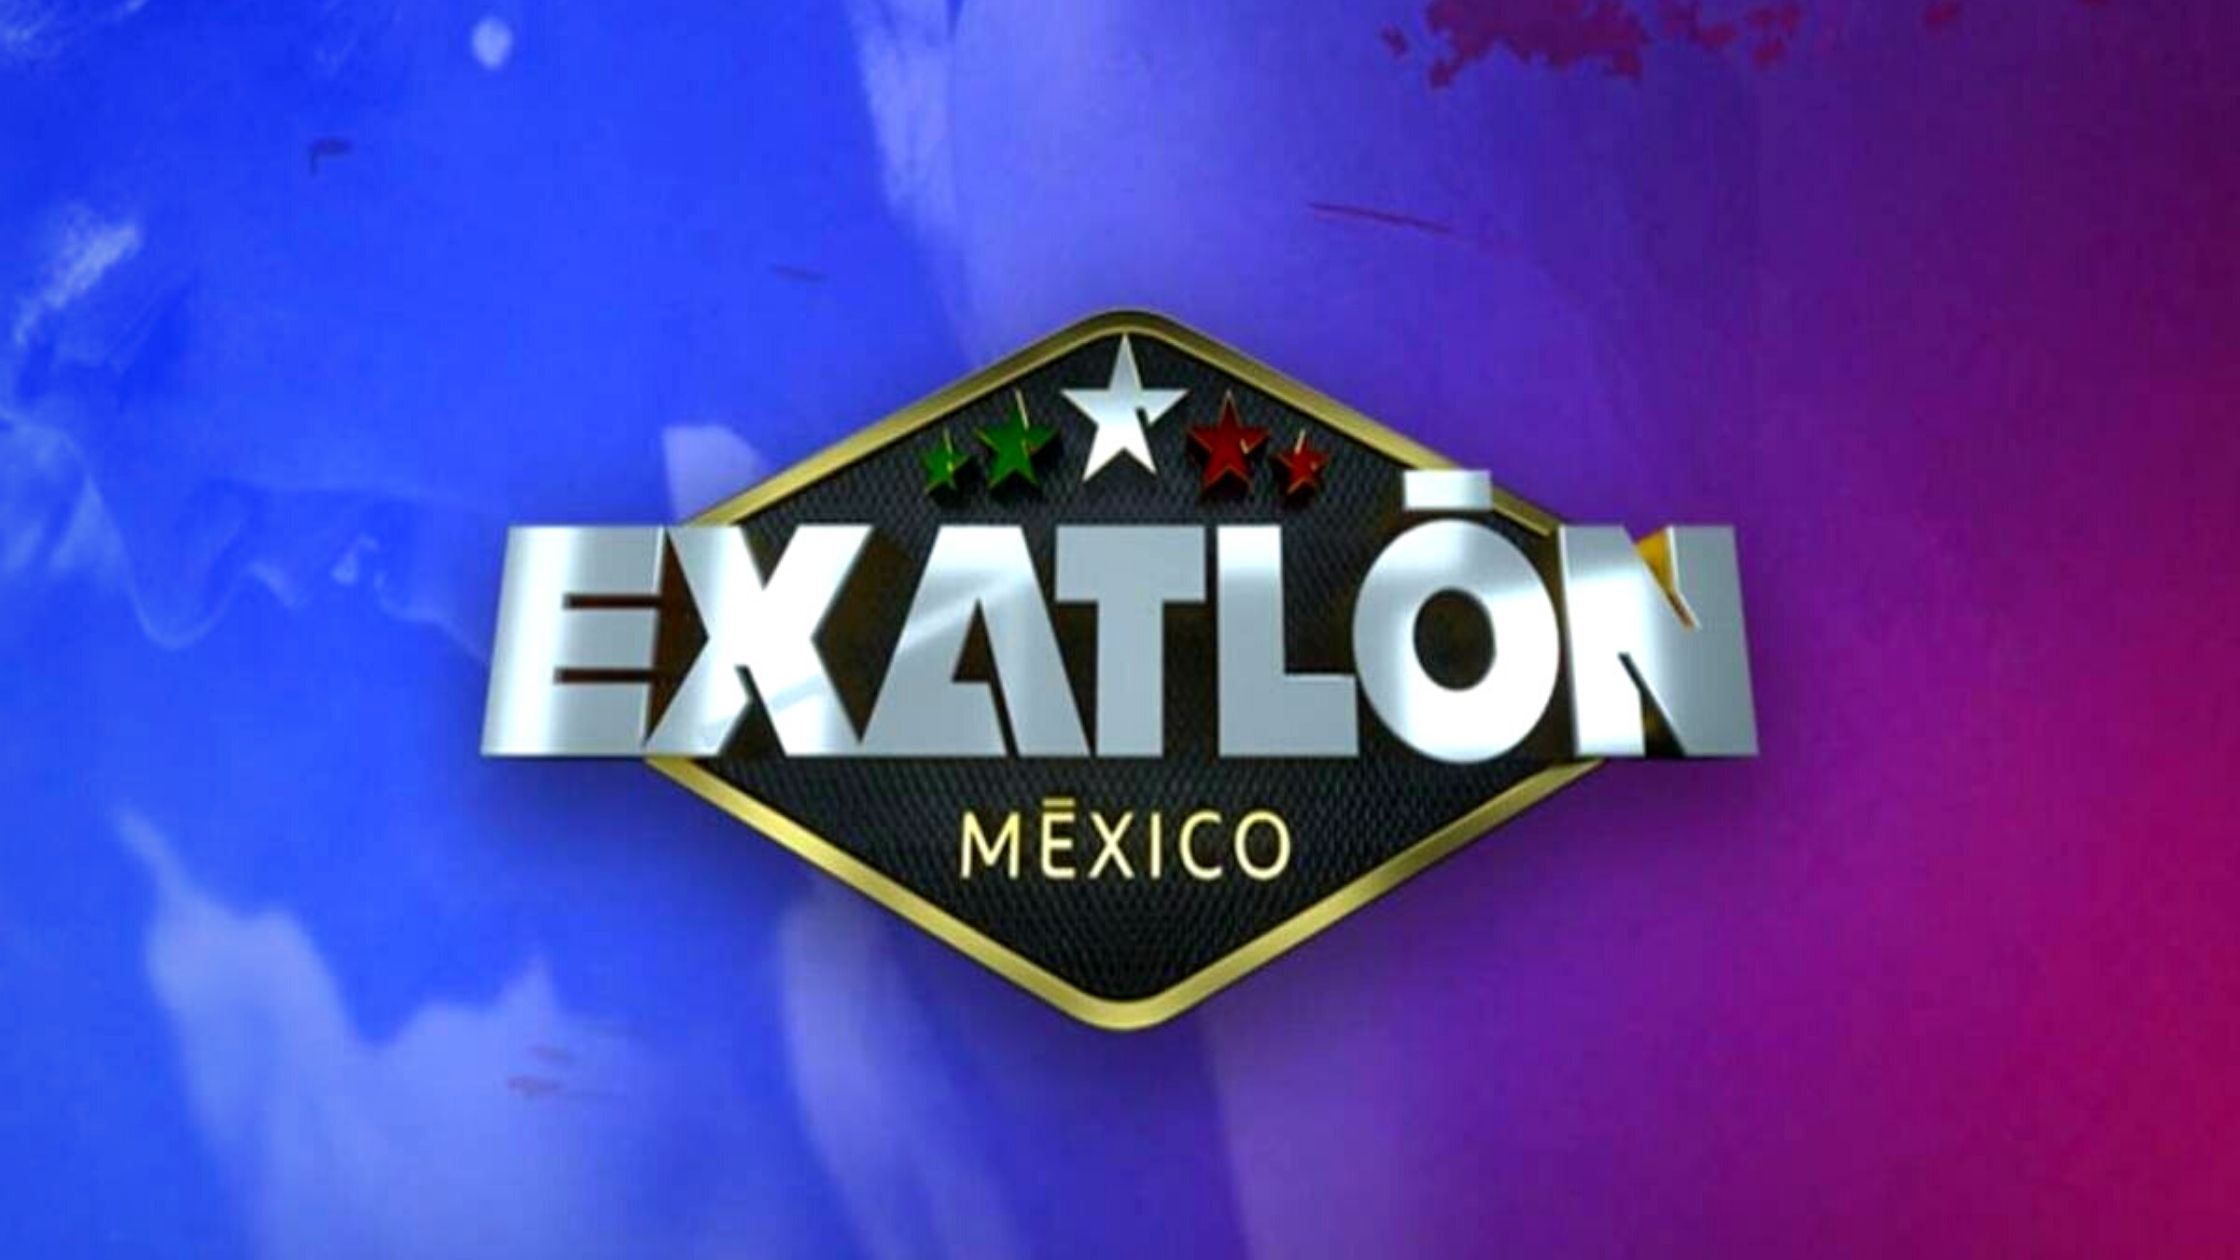 Exatlon Mexico El 21 de noviembre conoce quien gana la Villa 360